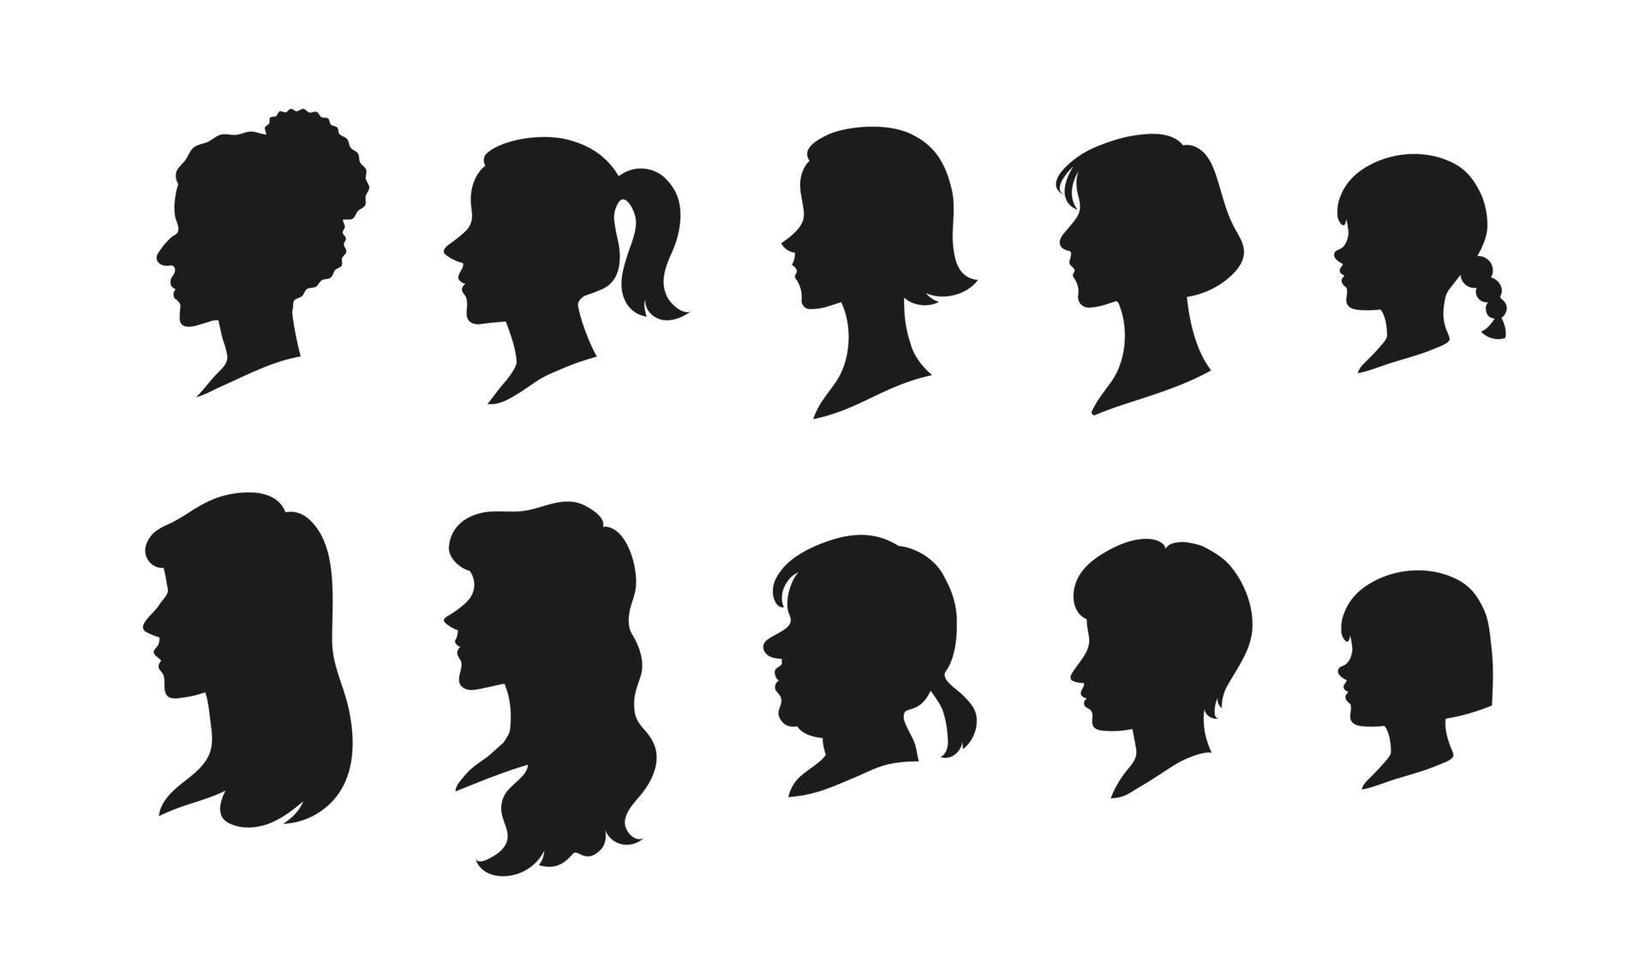 varie ombre di acconciature per le donne. illustrazioni di disegno vettoriale stile disegnato a mano.